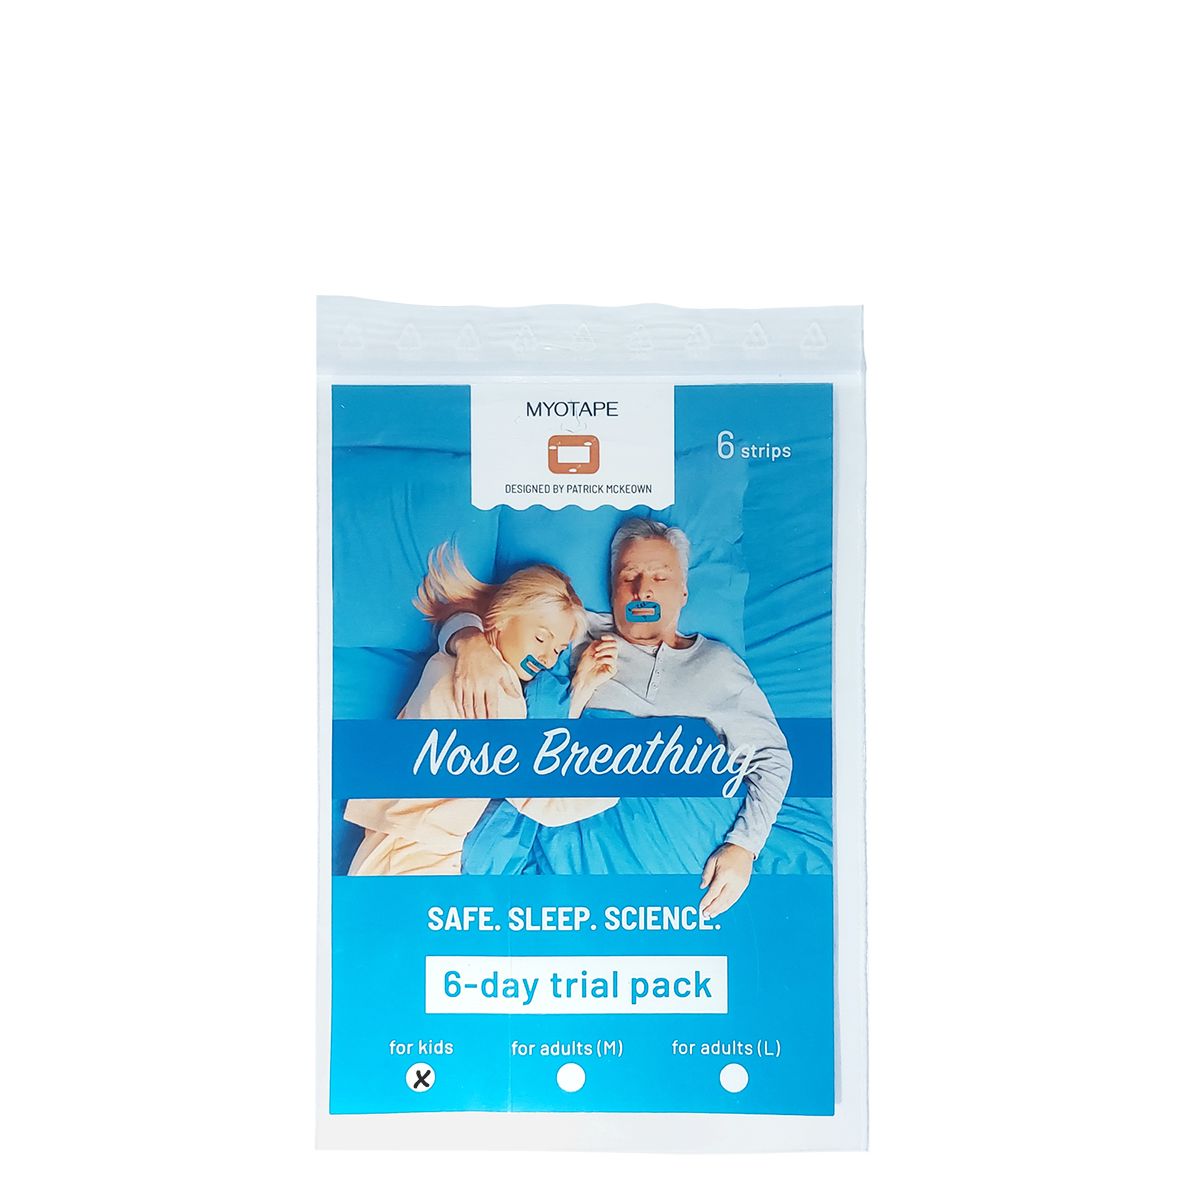 MYOTAPE - Nose Breathing Strips for Kids - Orrlégzést támogató szájtapasz, 6 db-os próba csomag, gyermek méret